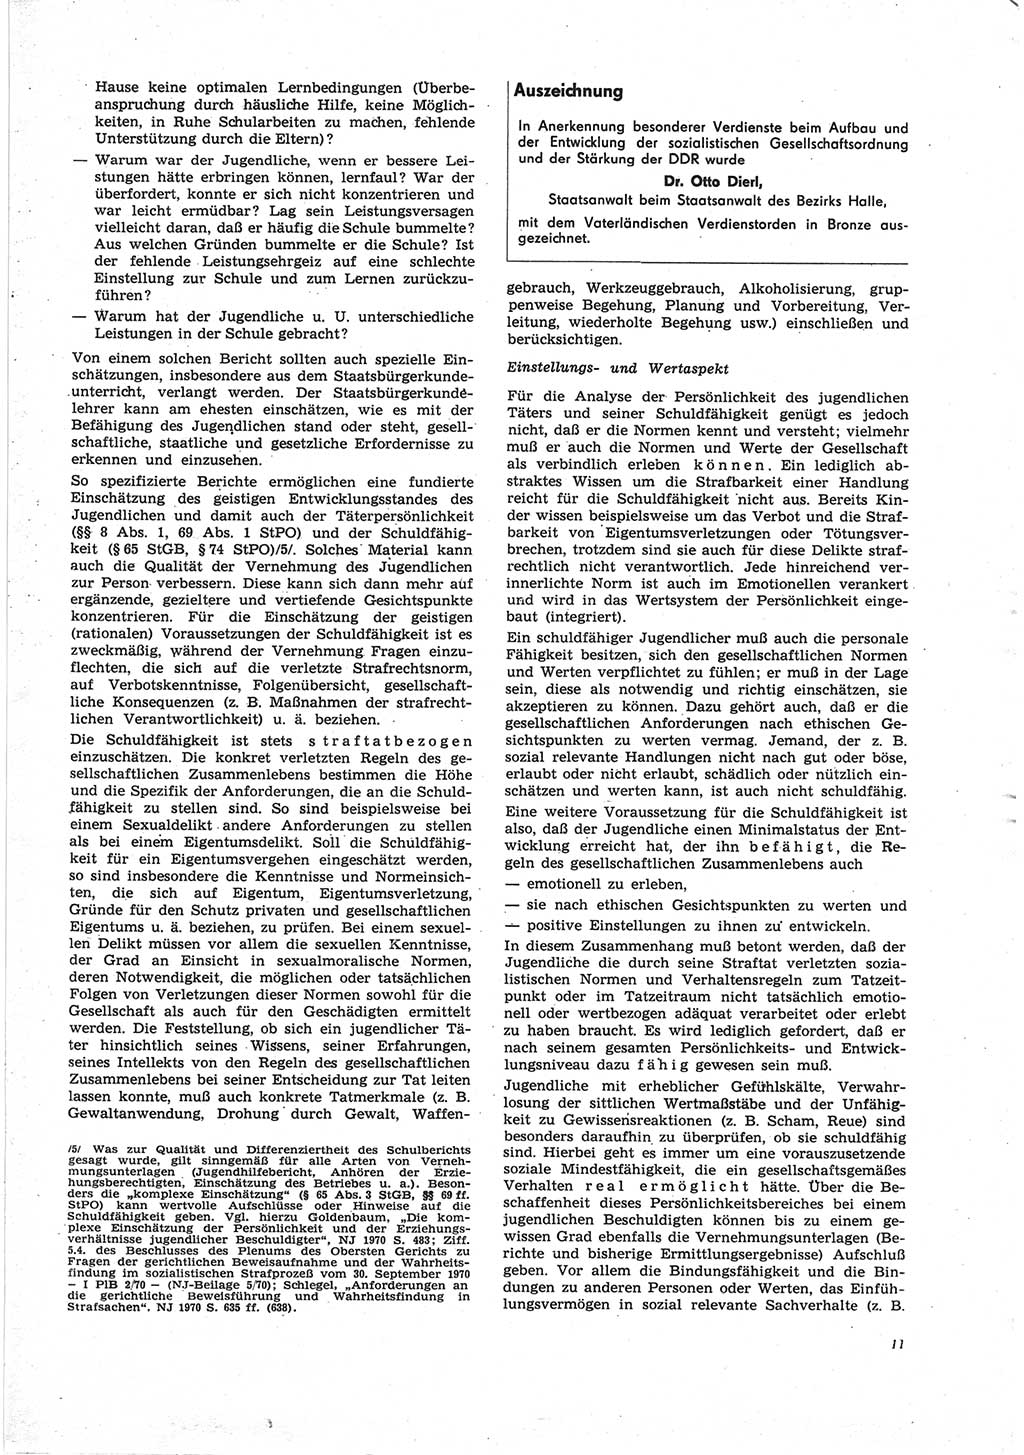 Neue Justiz (NJ), Zeitschrift für Recht und Rechtswissenschaft [Deutsche Demokratische Republik (DDR)], 25. Jahrgang 1971, Seite 11 (NJ DDR 1971, S. 11)